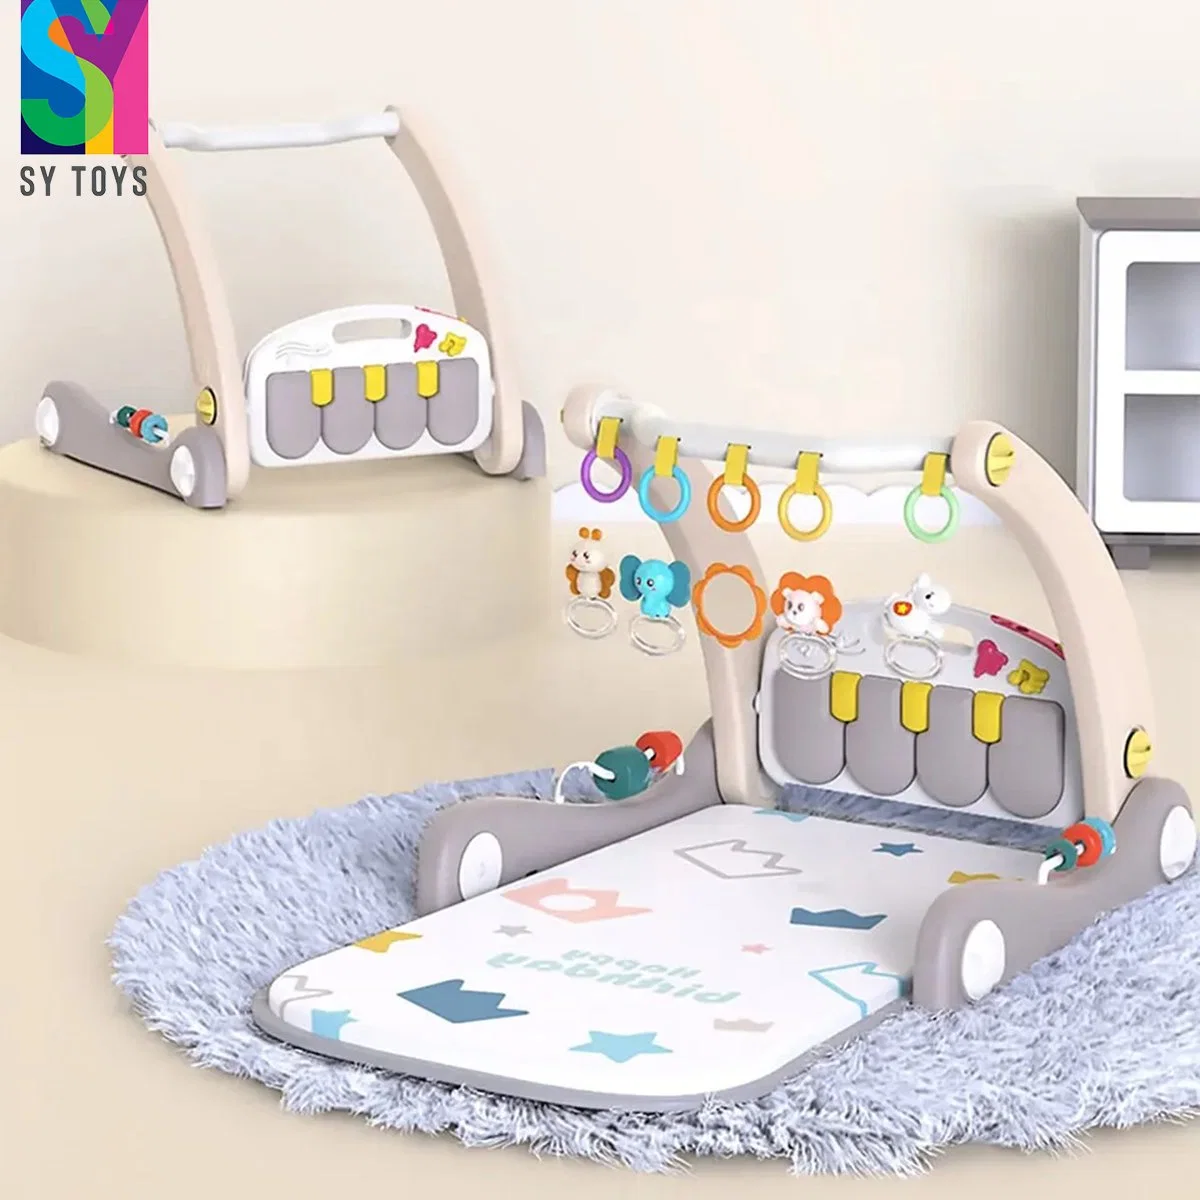 SY Toys 2 en 1 Baby Walker Tummy tiempo relleno Mat Baby Gym Juego Mats actividad para bebés Gimnasio juguete para Niño